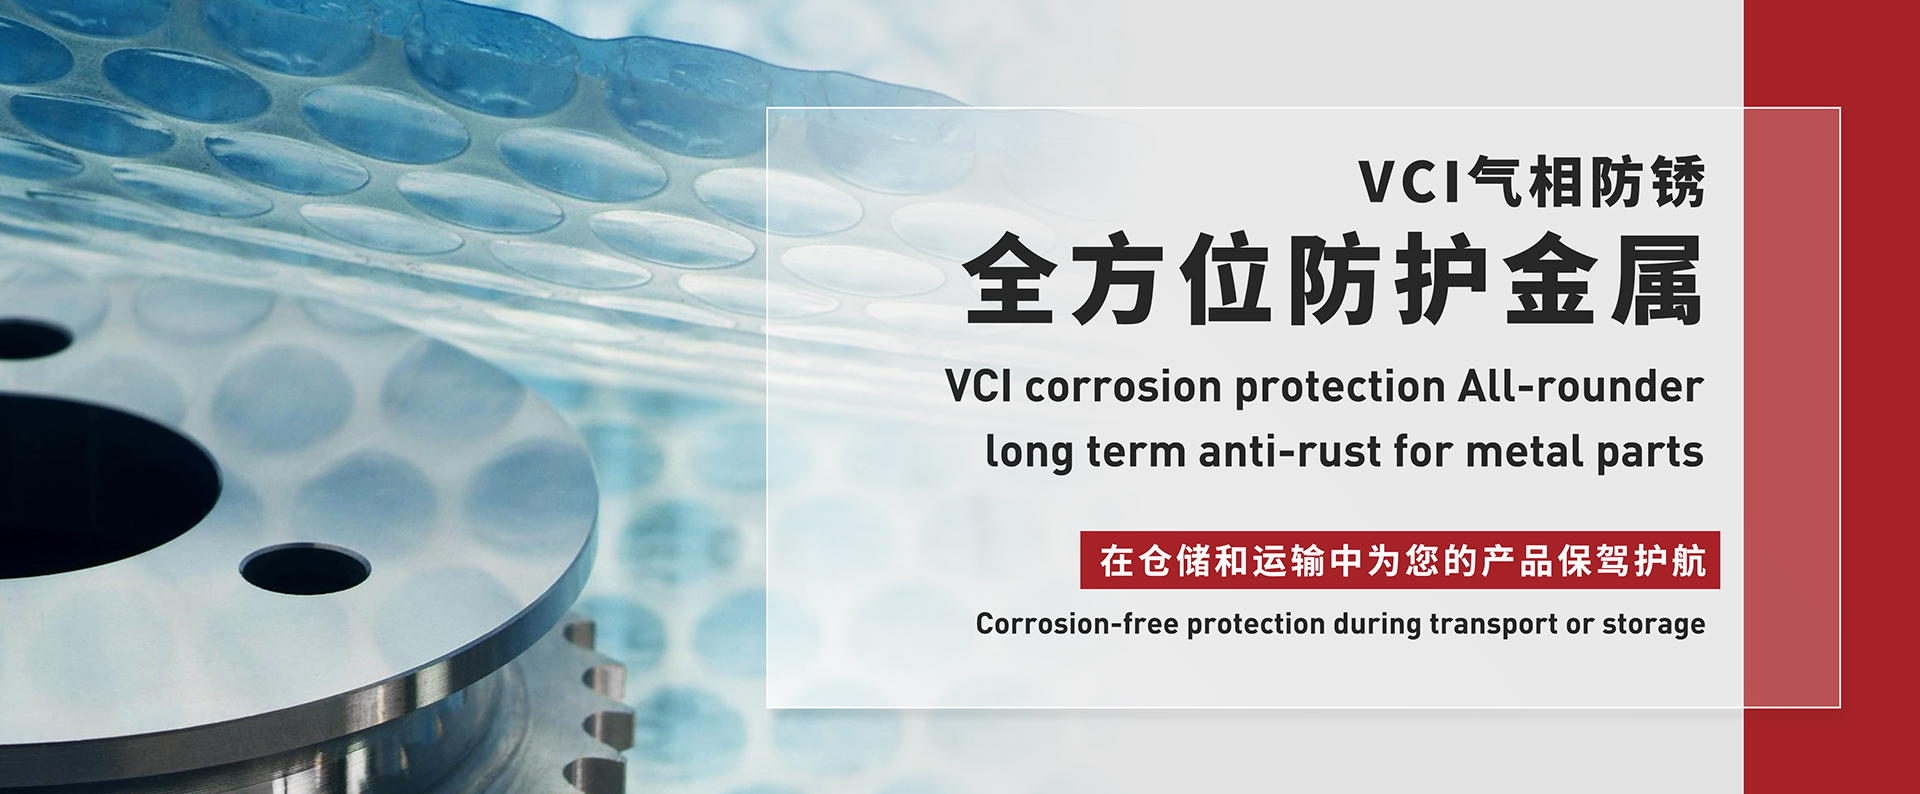 VCI气相防锈全方位防护金属,在仓储和运输中为您的产品保驾护航